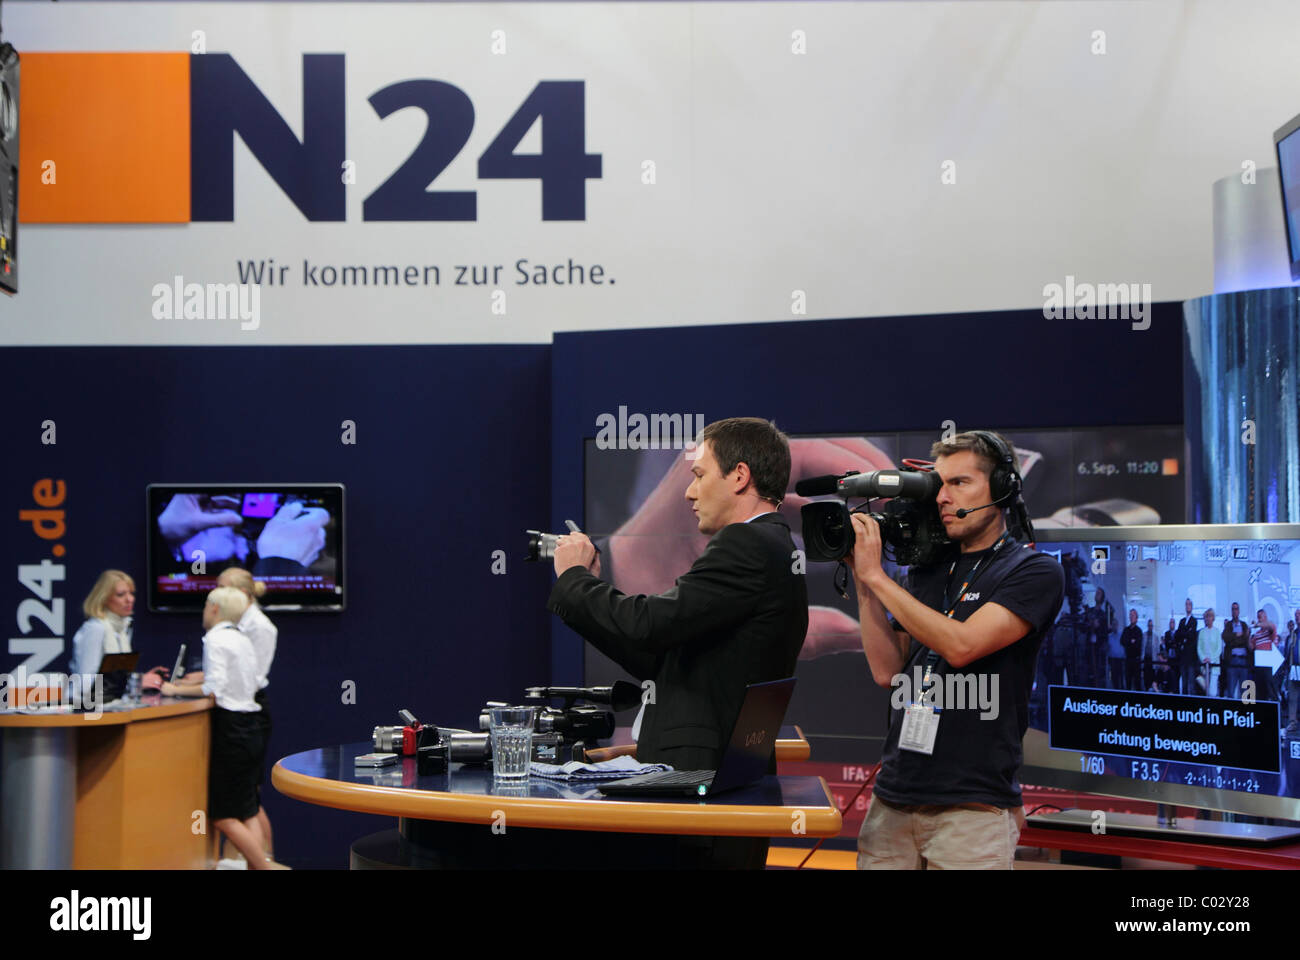 Trasmissione dal vivo allo stand del canale di notizie N24, IFA Berlin 2010, Berlino, Germania, Europa Foto Stock